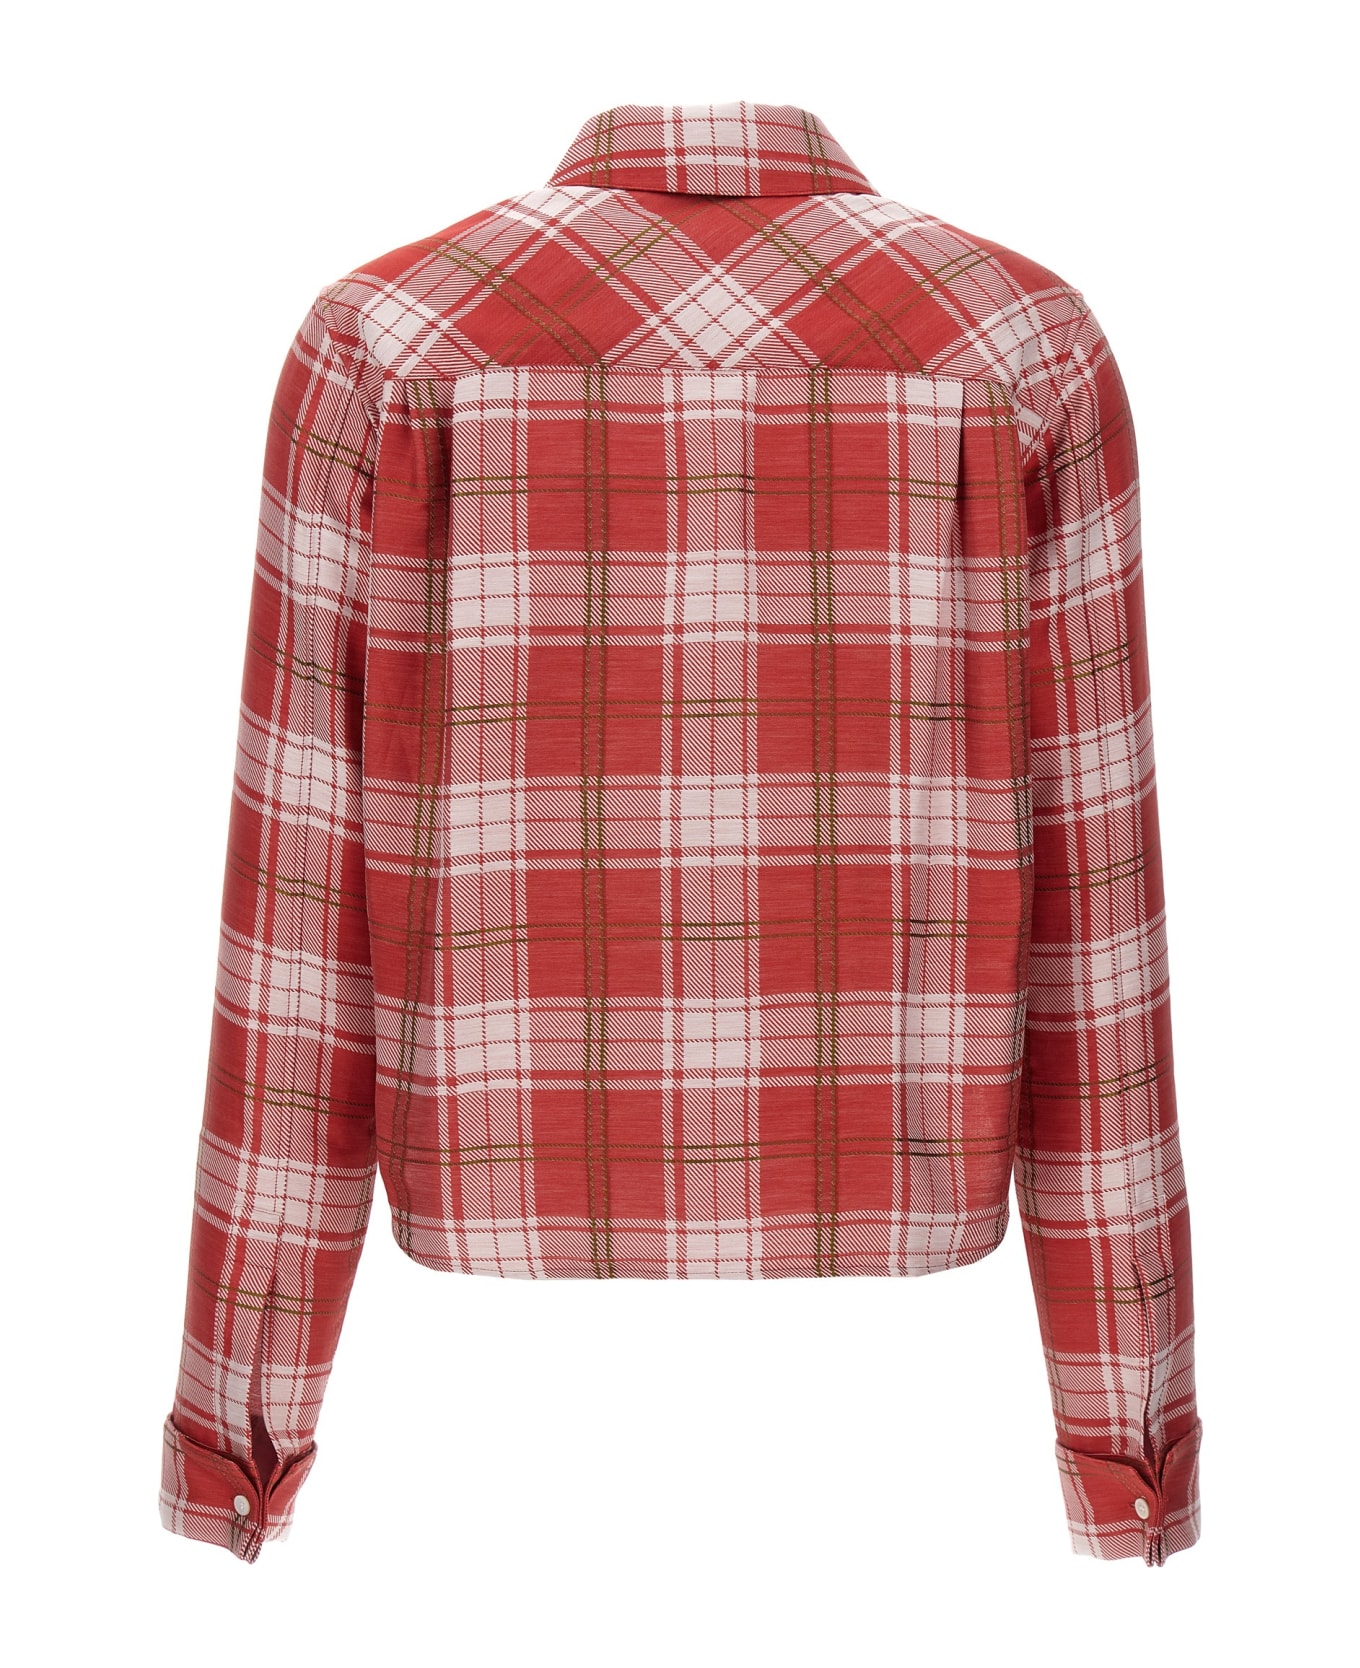 Loewe Check Shirt - Red